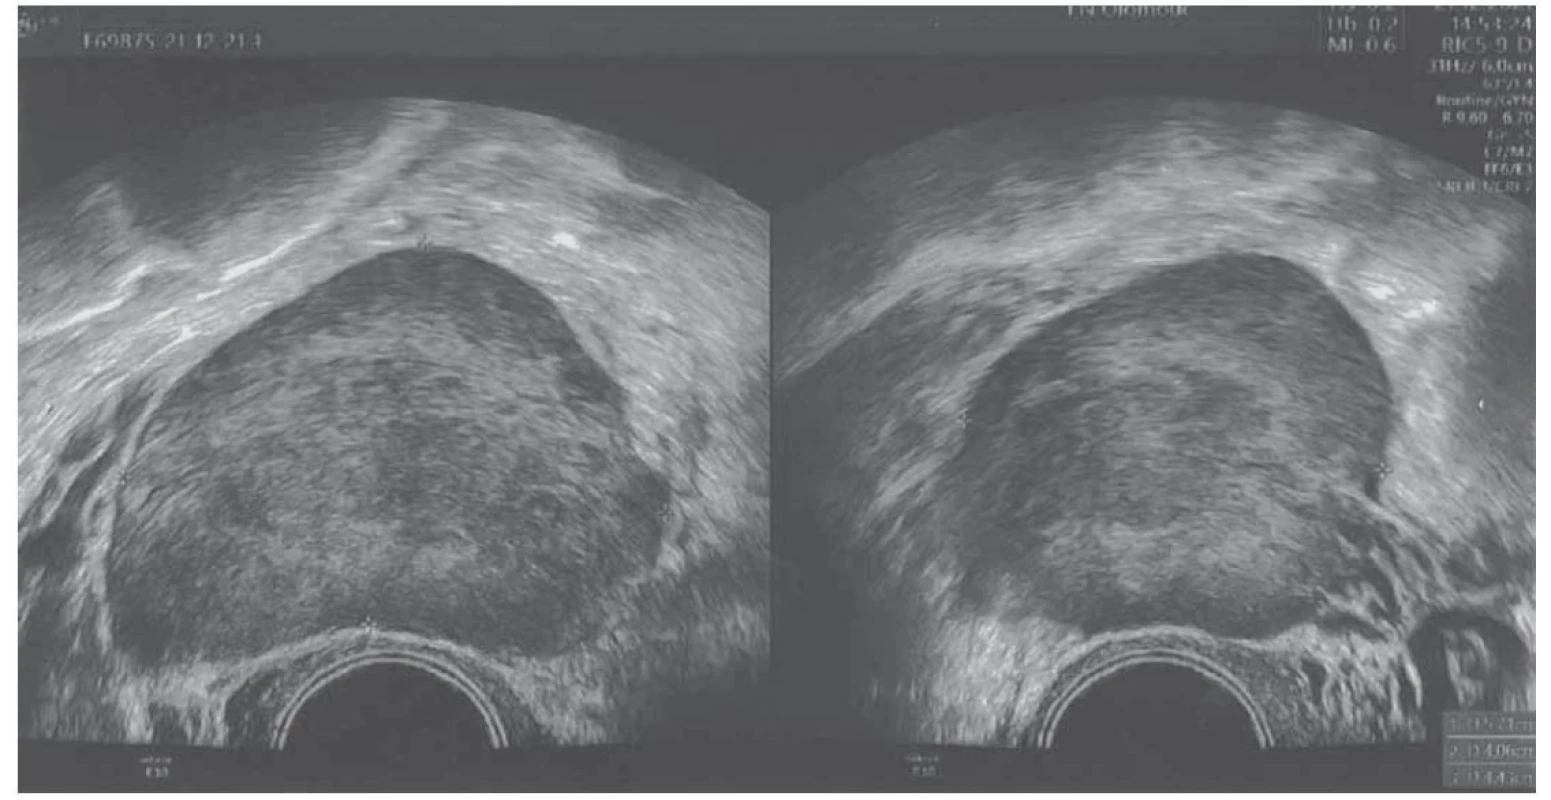 Předoperační ultrazvukové zobrazení tumoru.<br>
Fig. 1. Preoperative ultrasound imaging of the tumor.